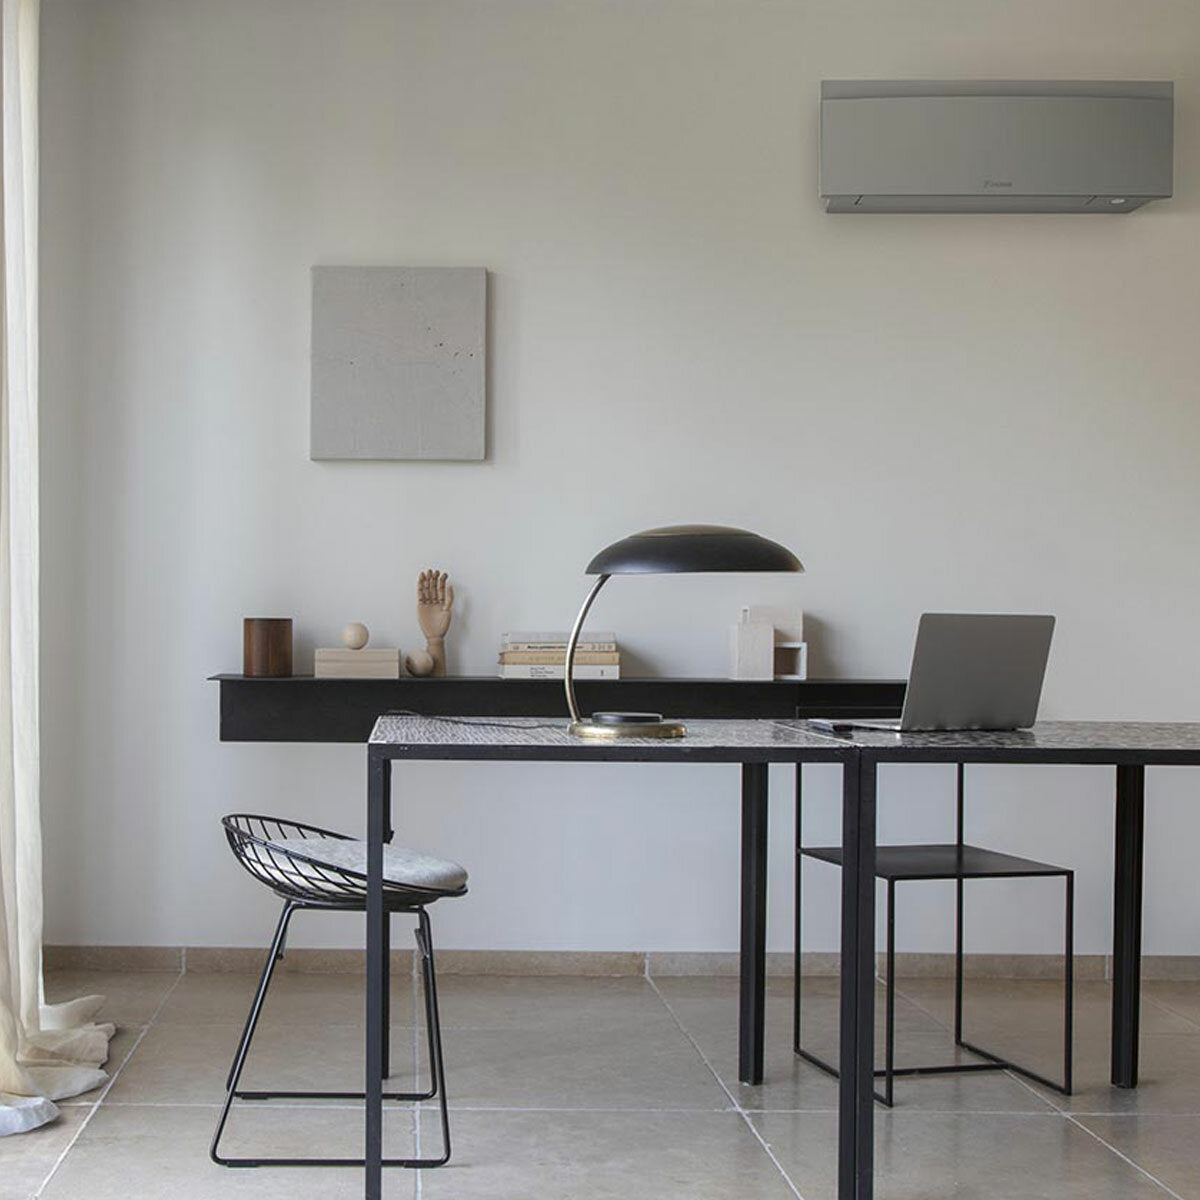 Daikin Emura 3 trial split air conditioner 7000+7000+9000 BTU inverter A++ wifi outdoor unit 4 kW Silver